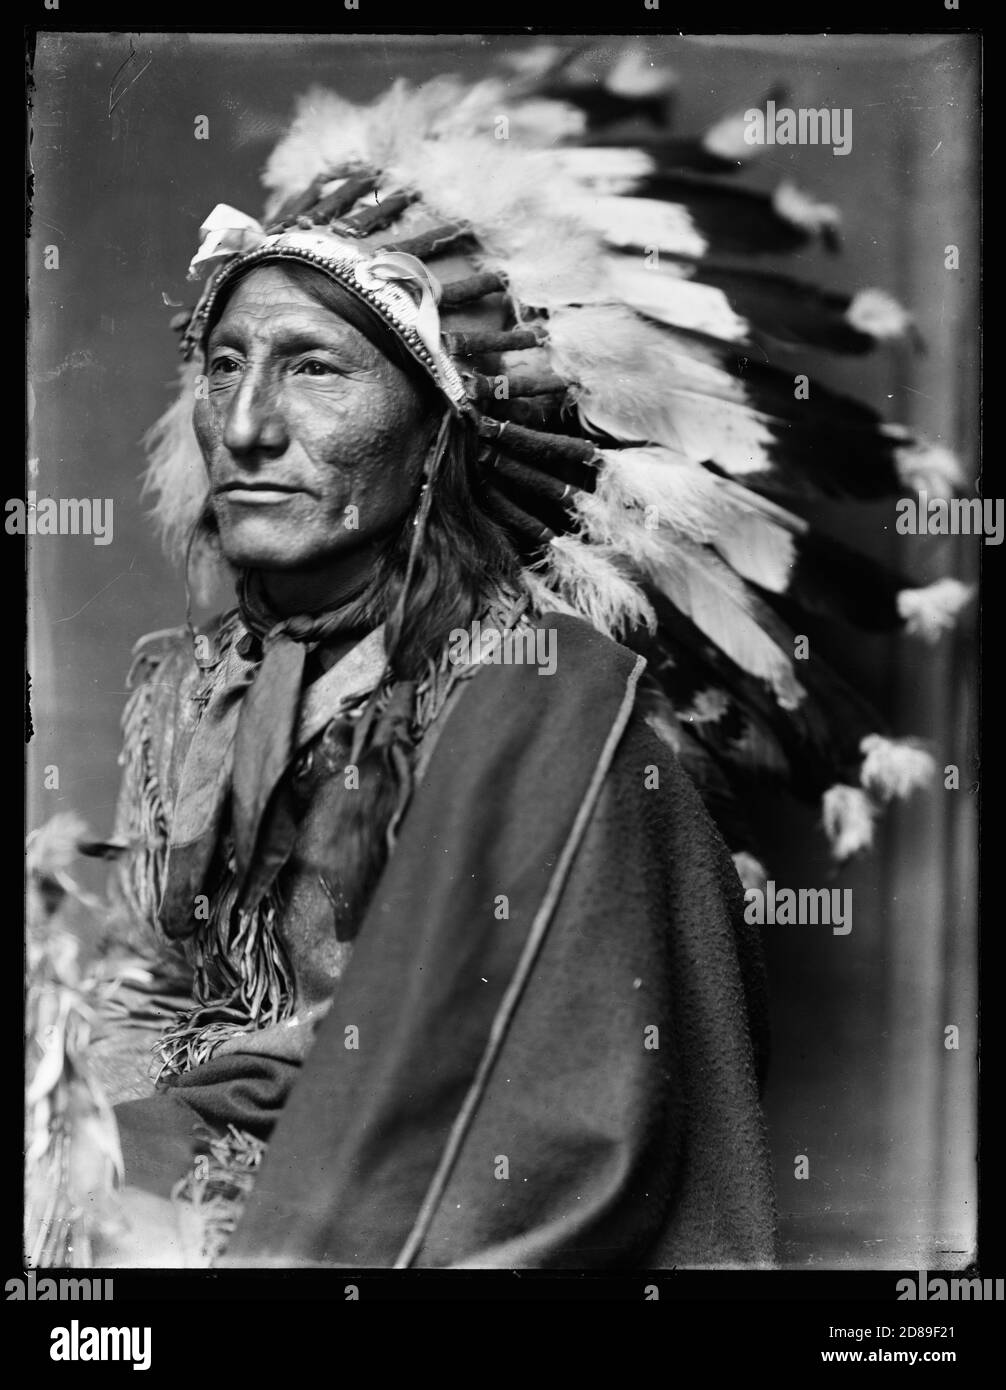 Retrato nativo americano, Whirling Horse, indio americano 1890 Foto de stock